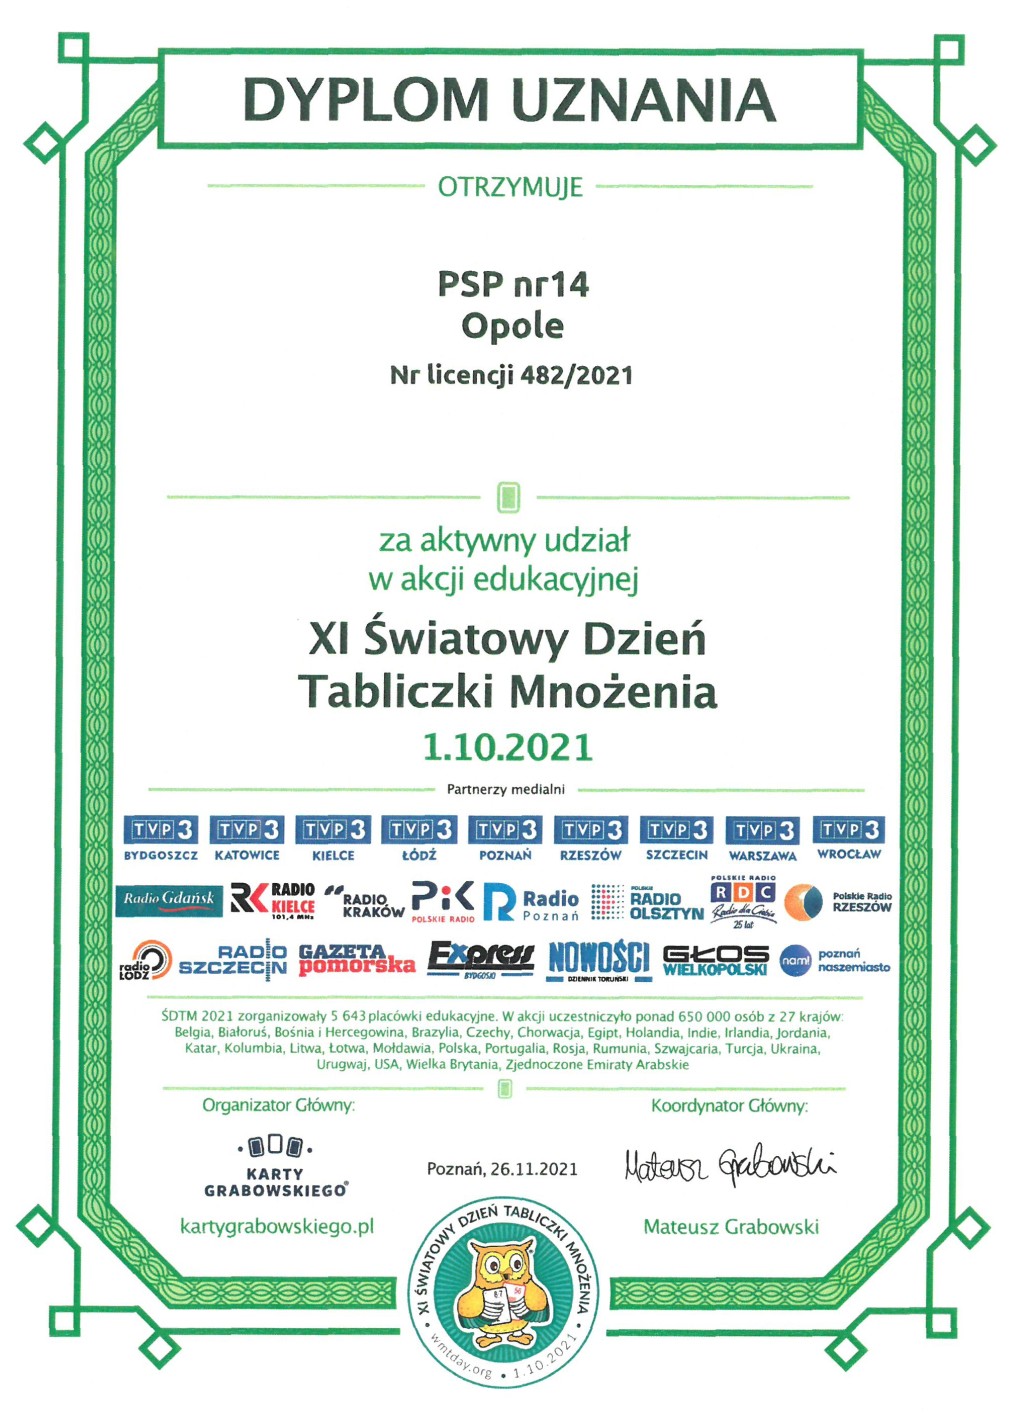 Dyplom uznania dla PSP14